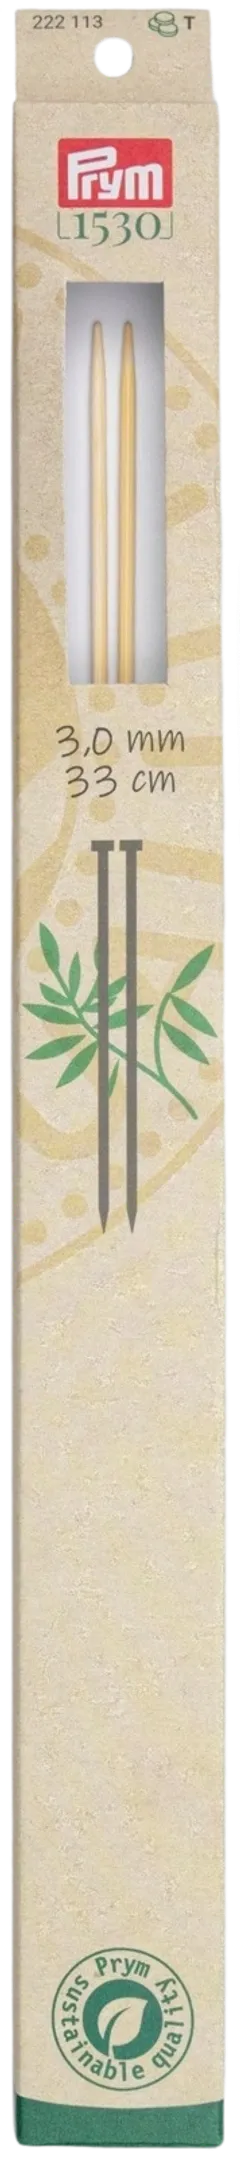 Prym neulepuikko 3,0 33cm bambu - 1